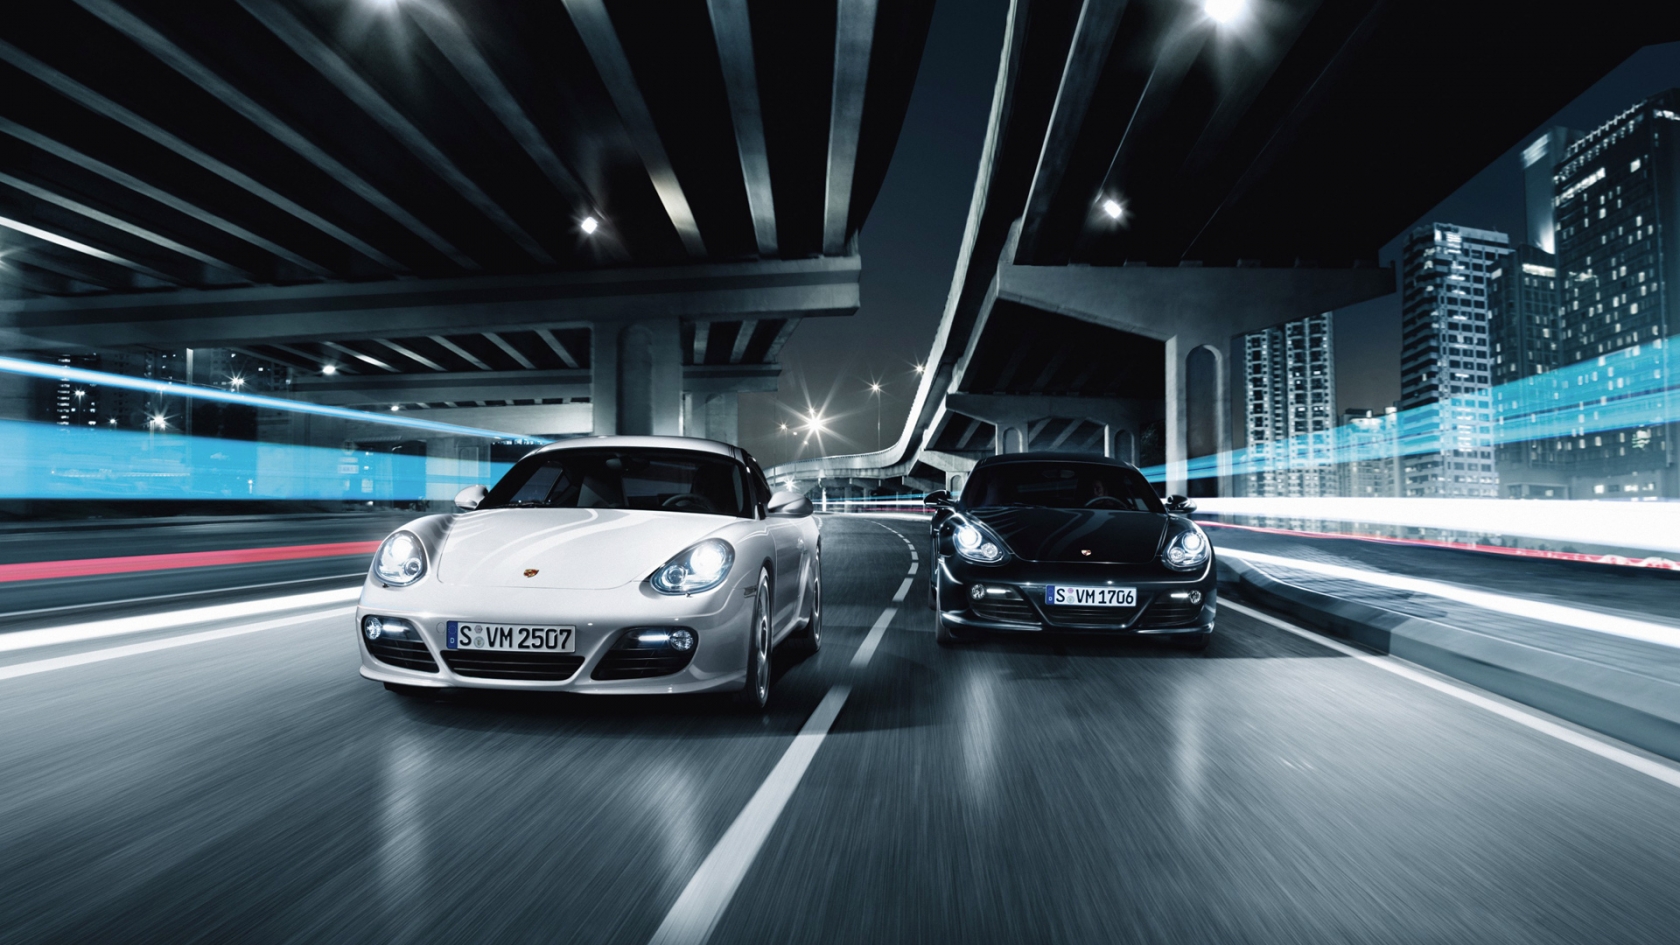 Porsche 911 GT2 Race for 1680 x 945 HDTV resolution